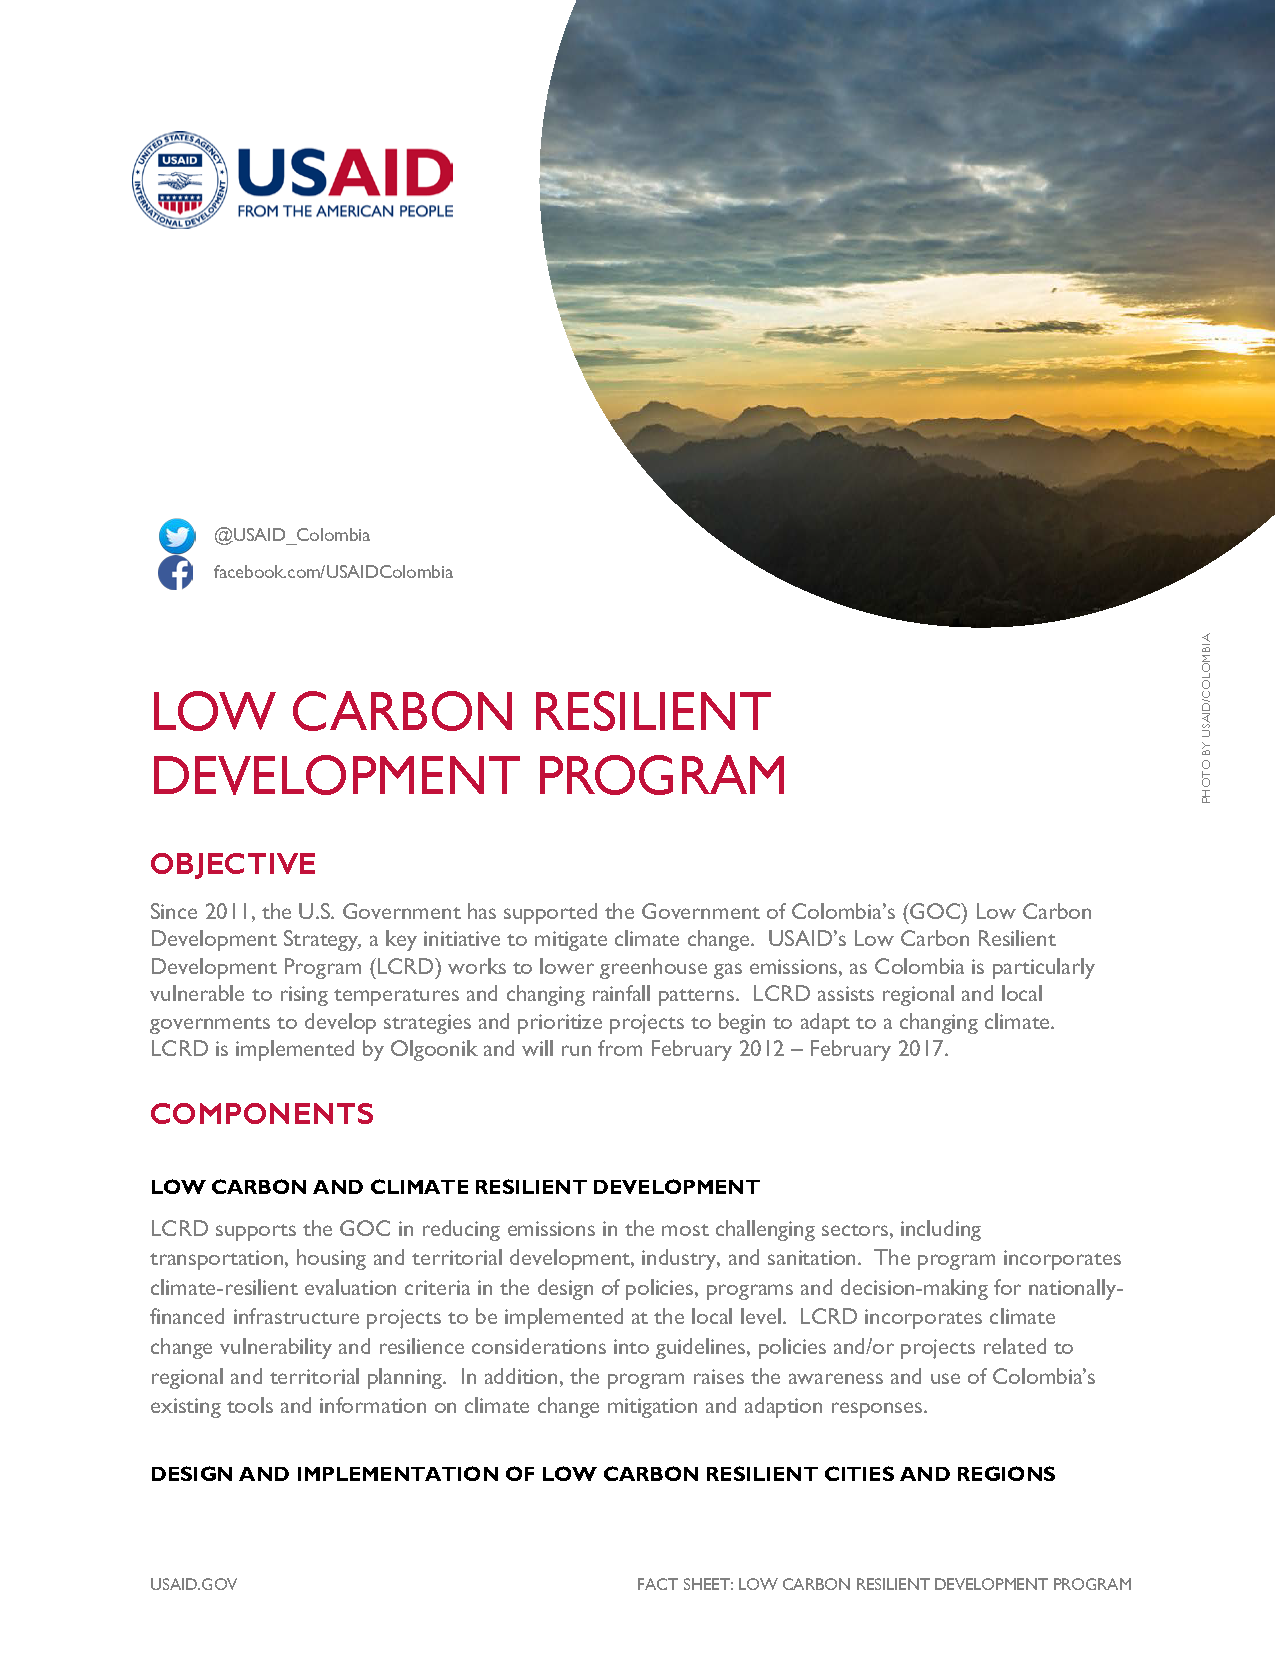 Low Carbon Resilient Development Program Fact Sheet